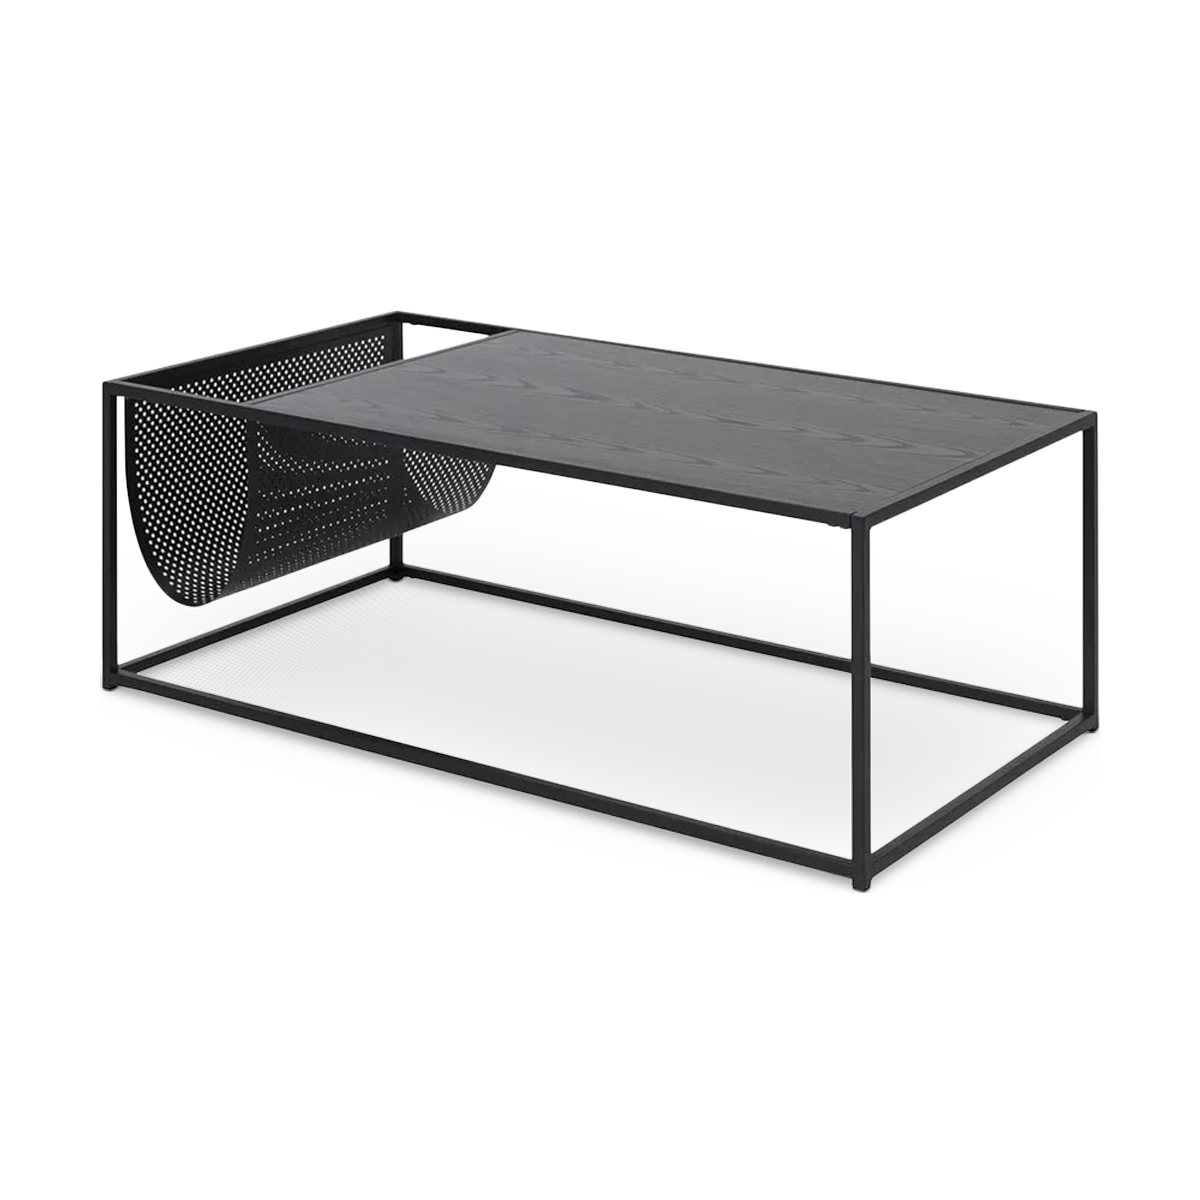 Vic houten salontafel zwart - met krantenrek - 110 x 60 cm